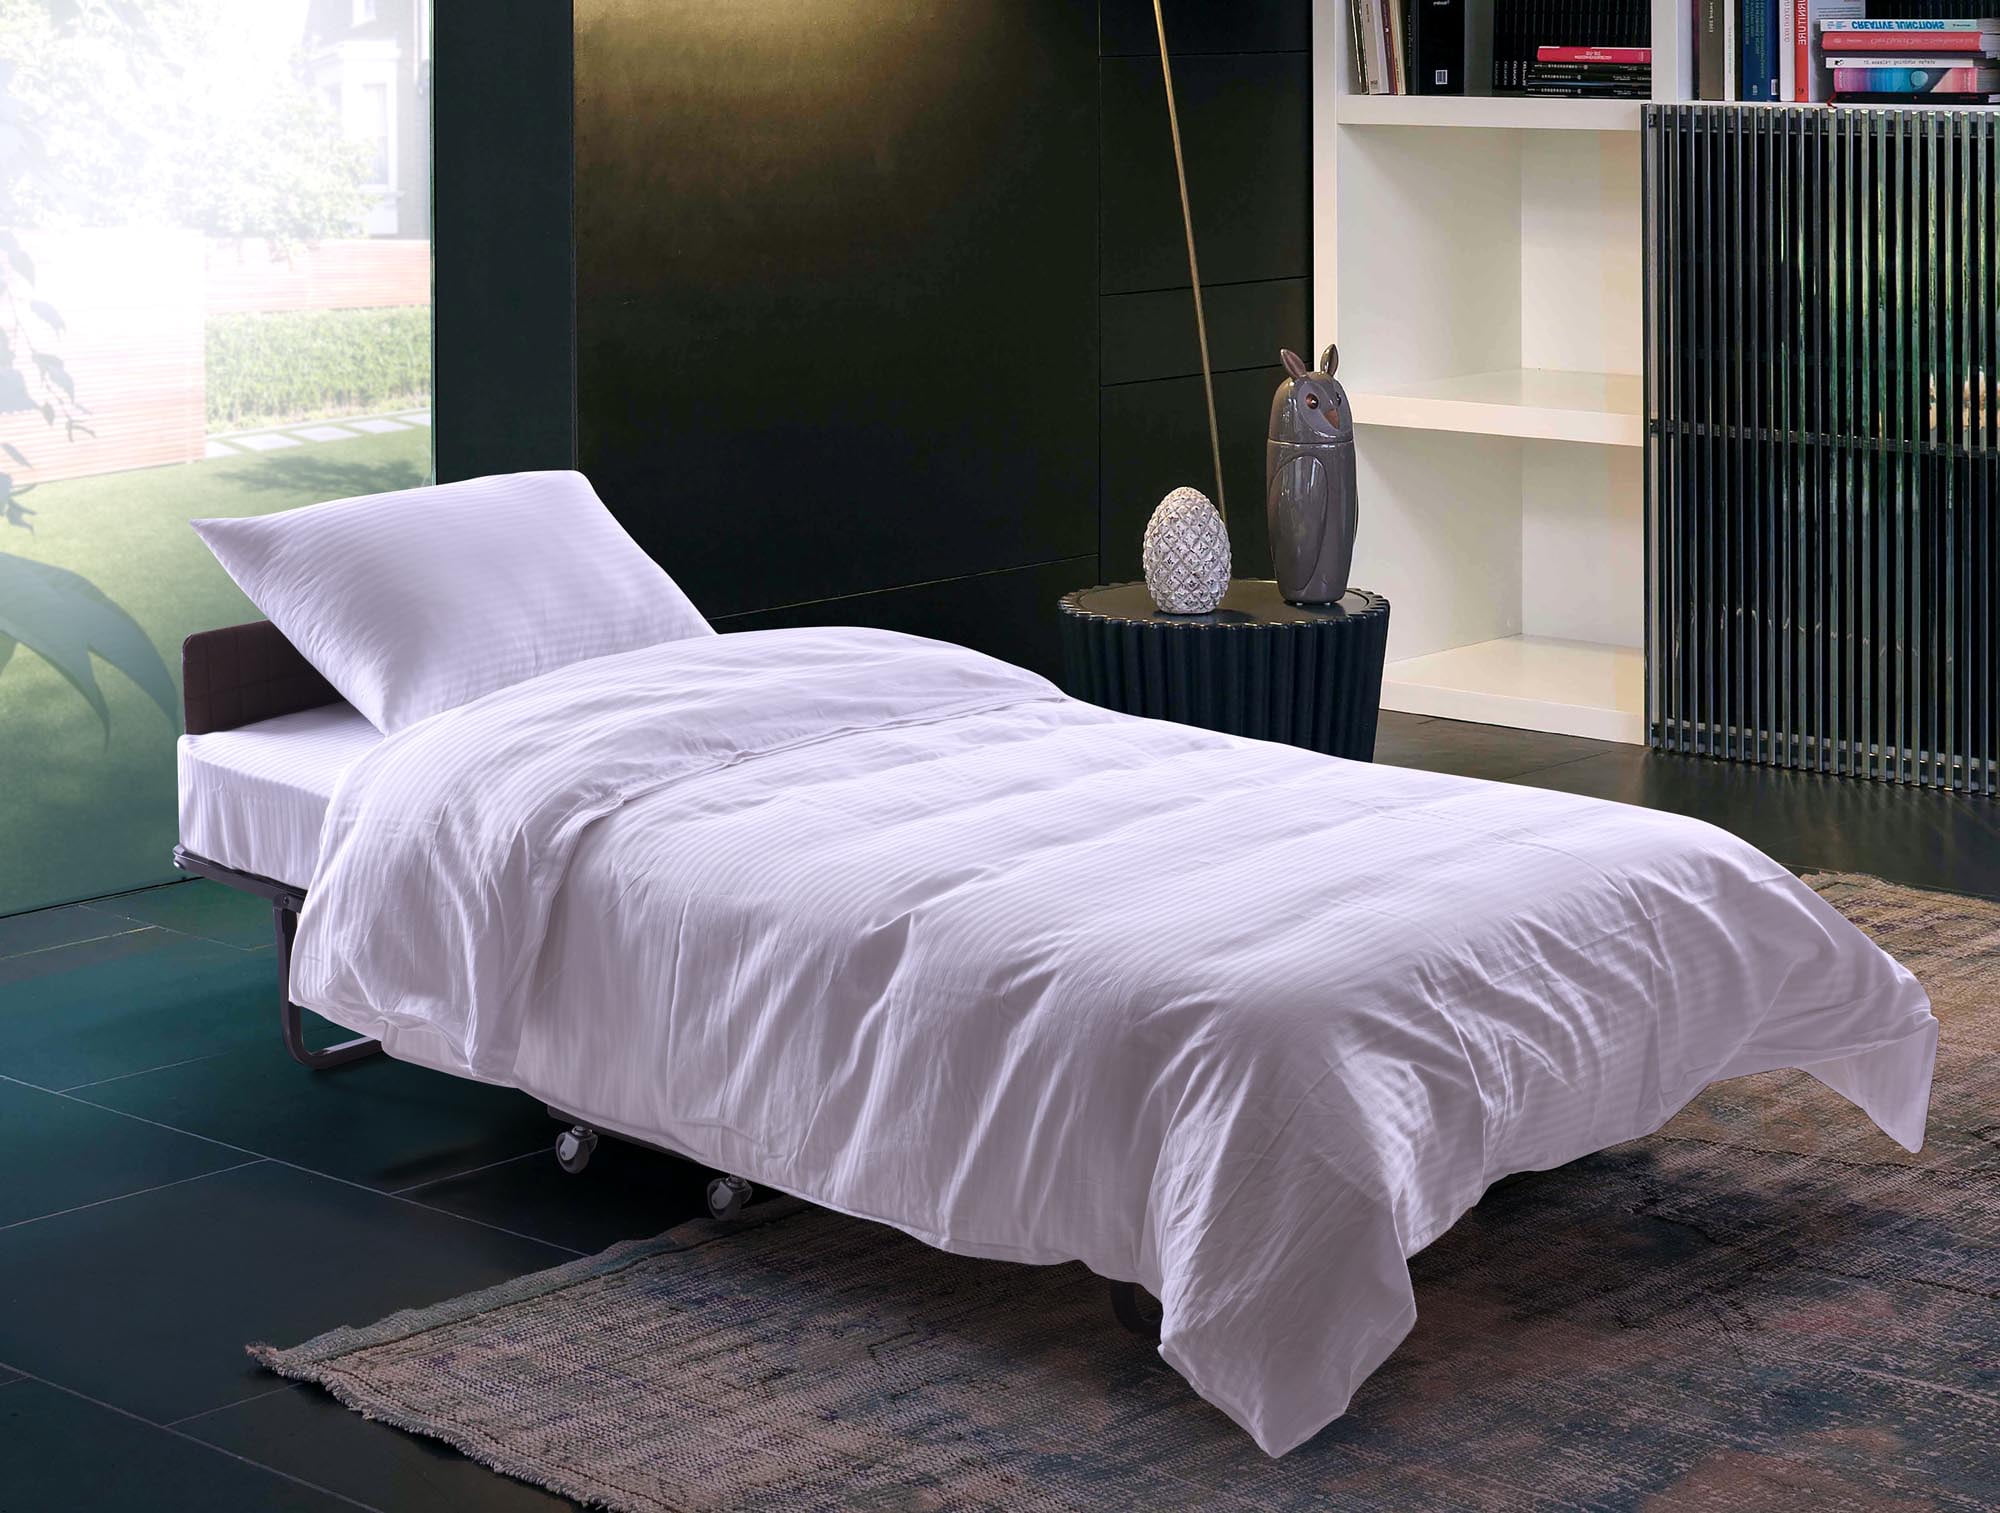 twin rollaway bed with memory foam mattress